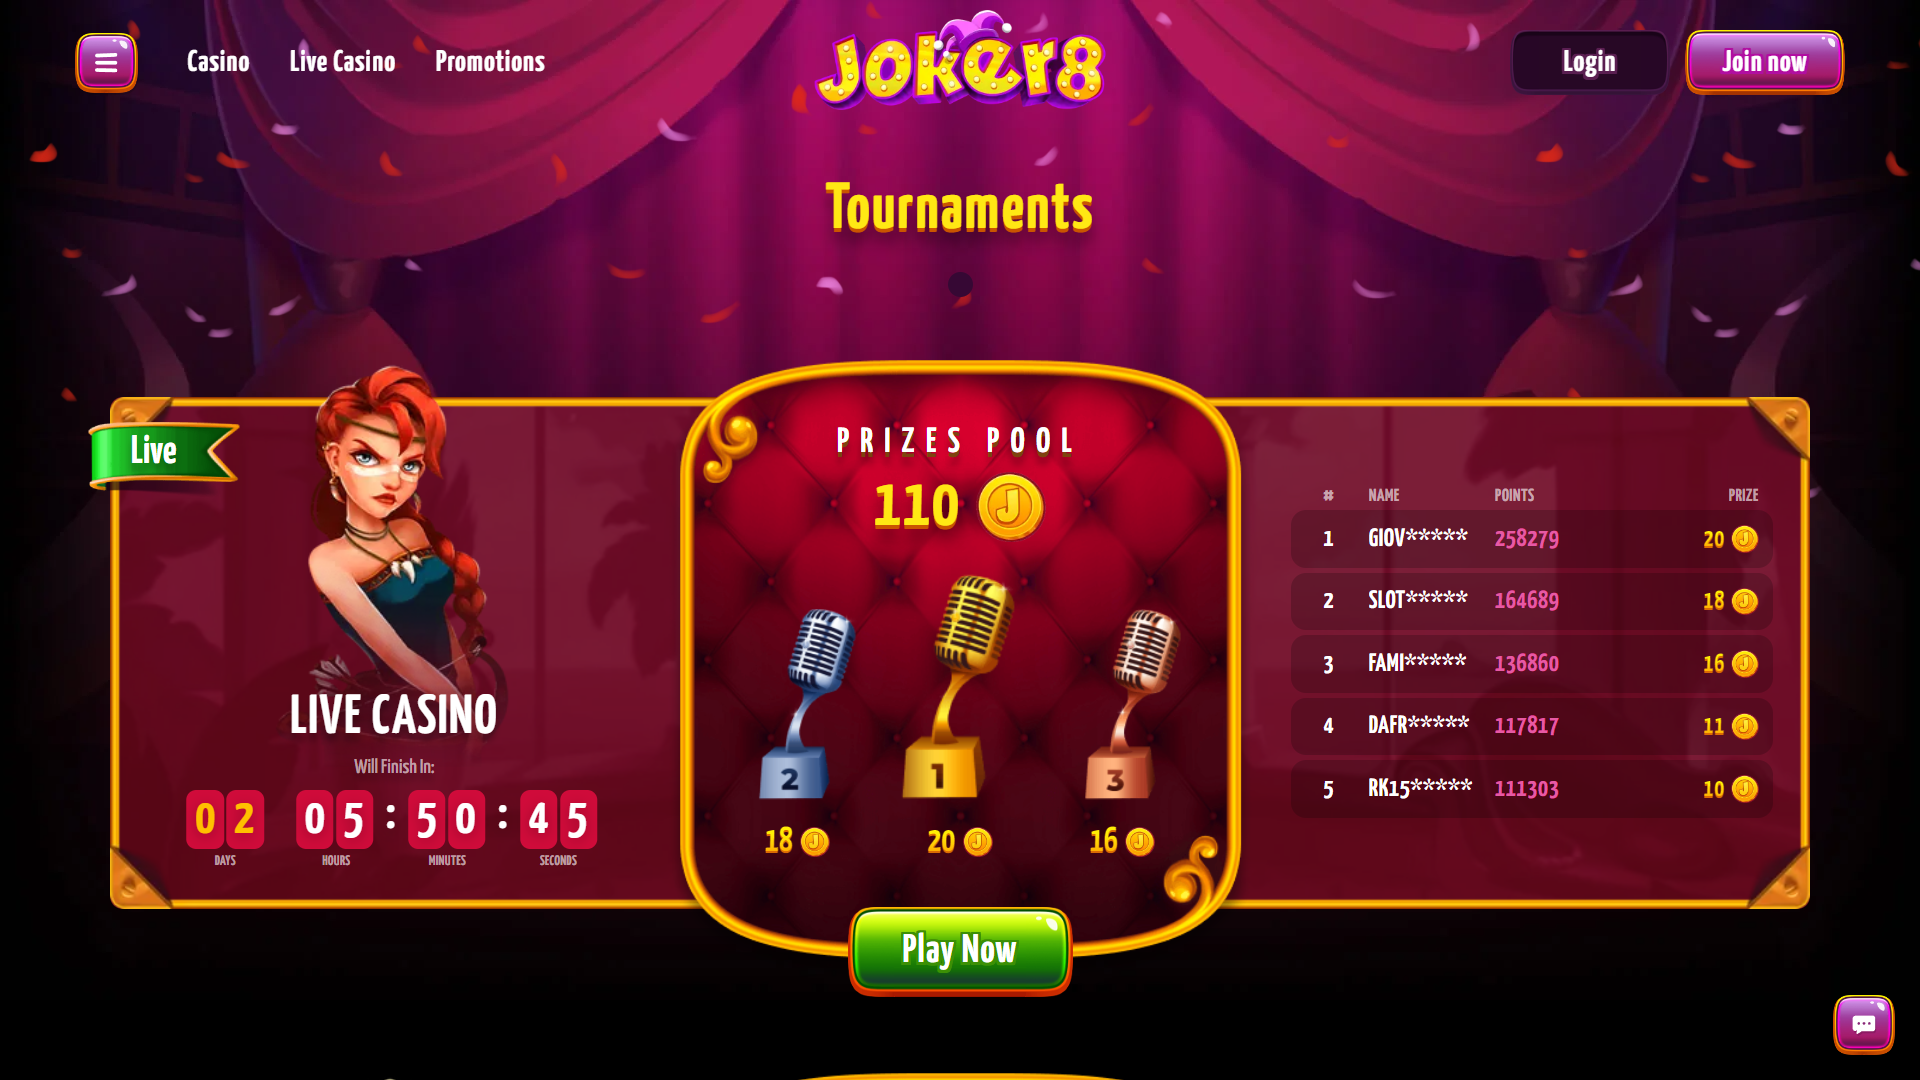 Joker8 Casino Tournaments